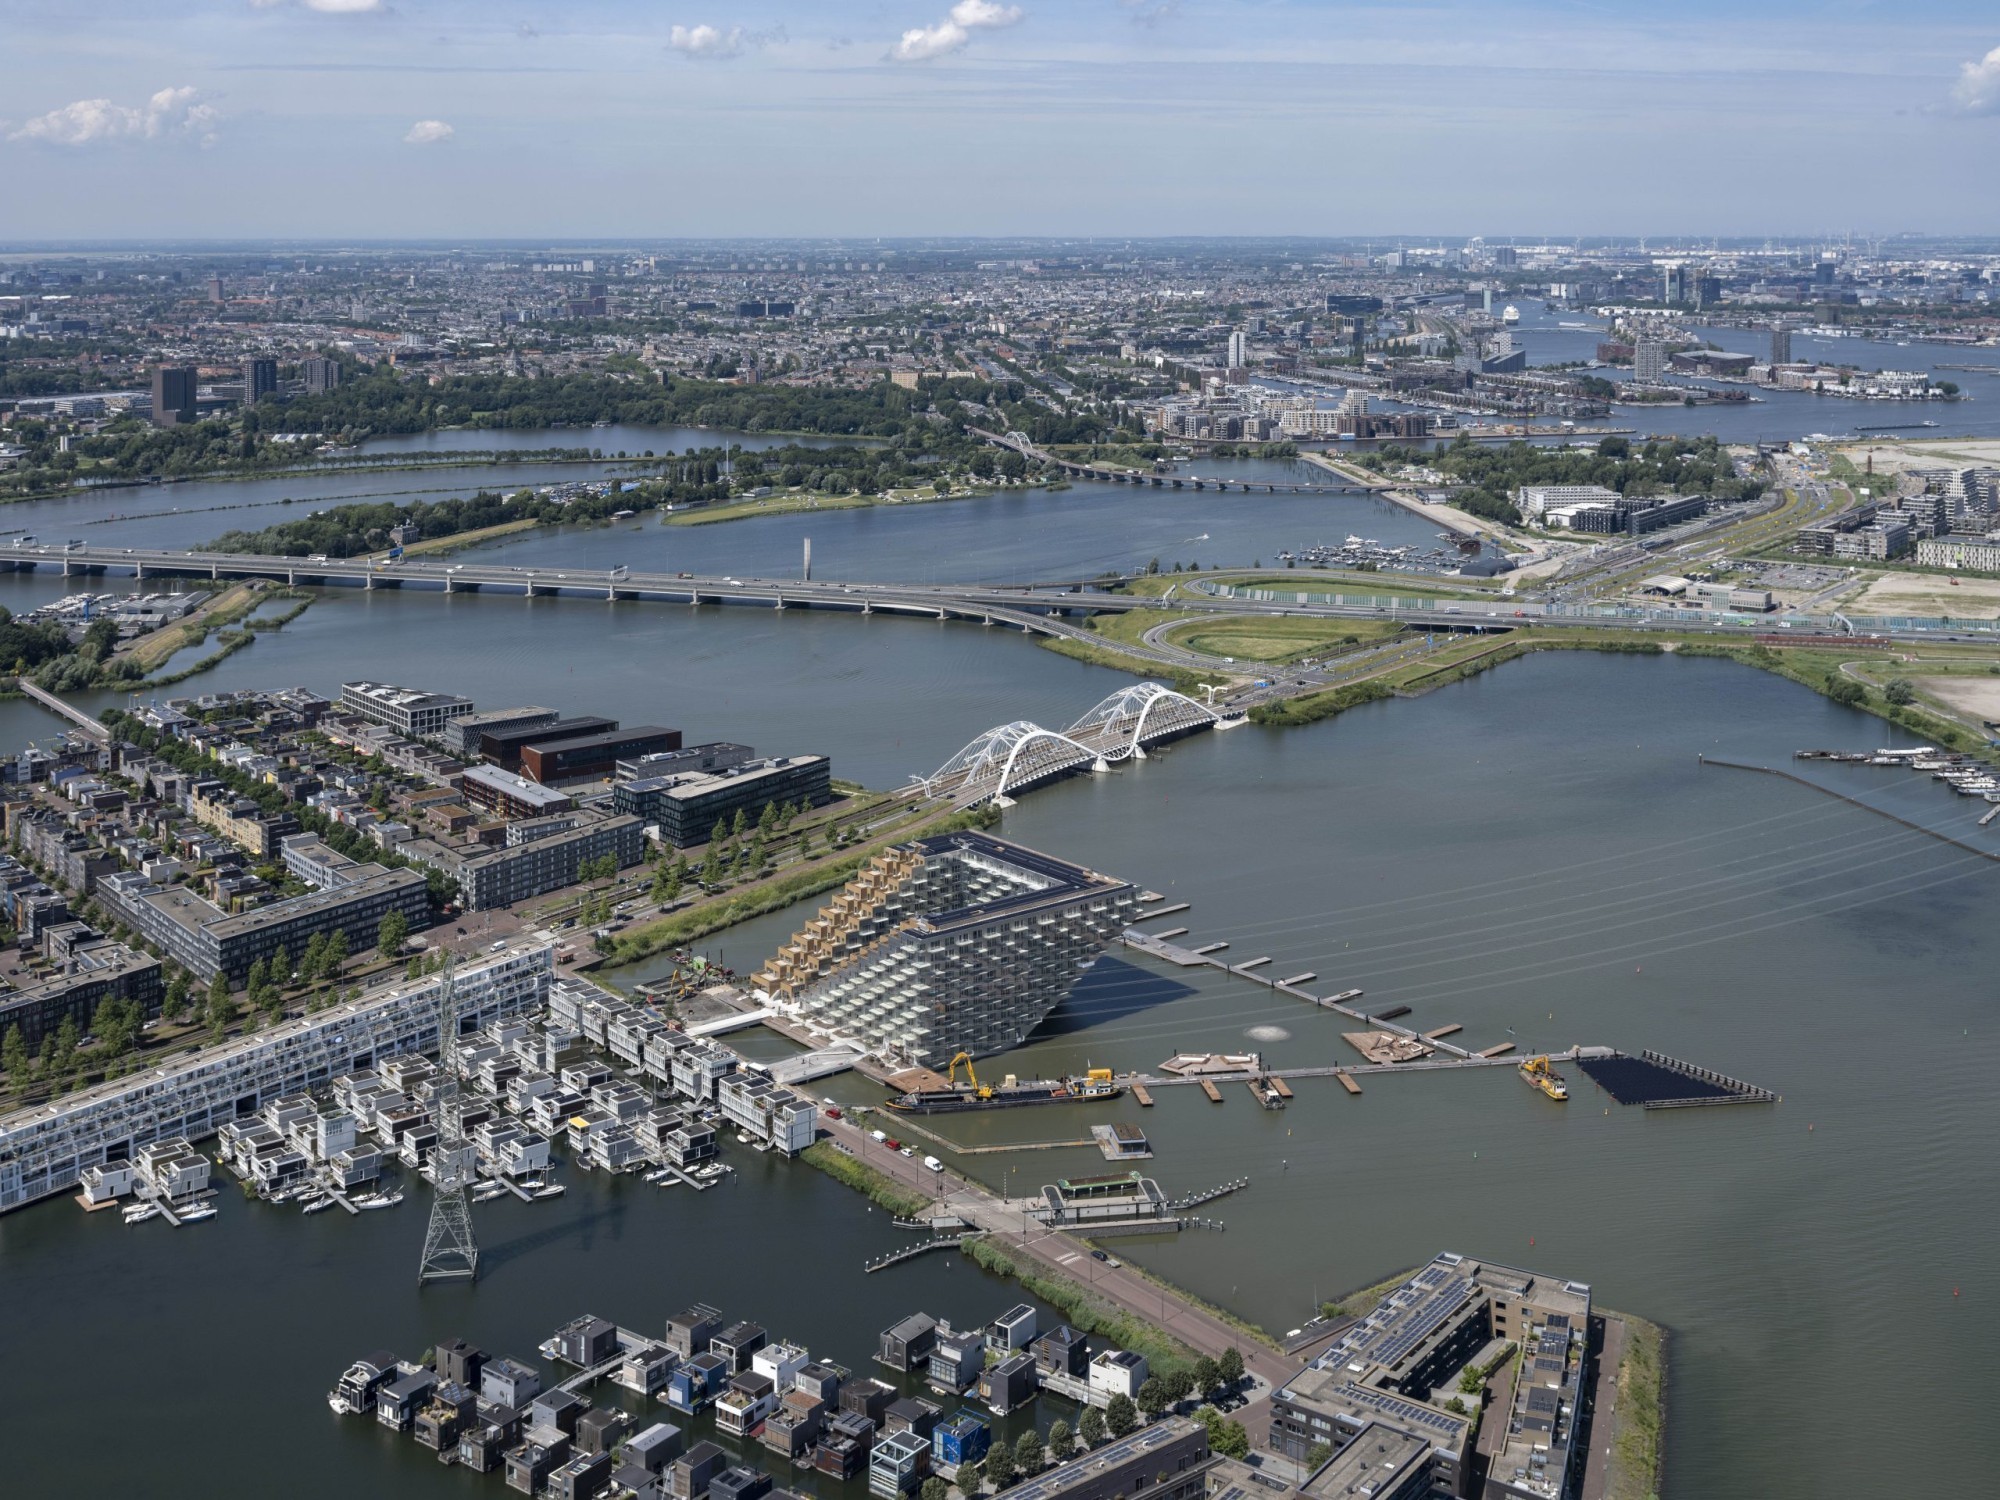 Le projet a permis de construire un immeuble d'habitation dans le quartier d'IJburg à Amsterdam, directement au bord du lac IJ.